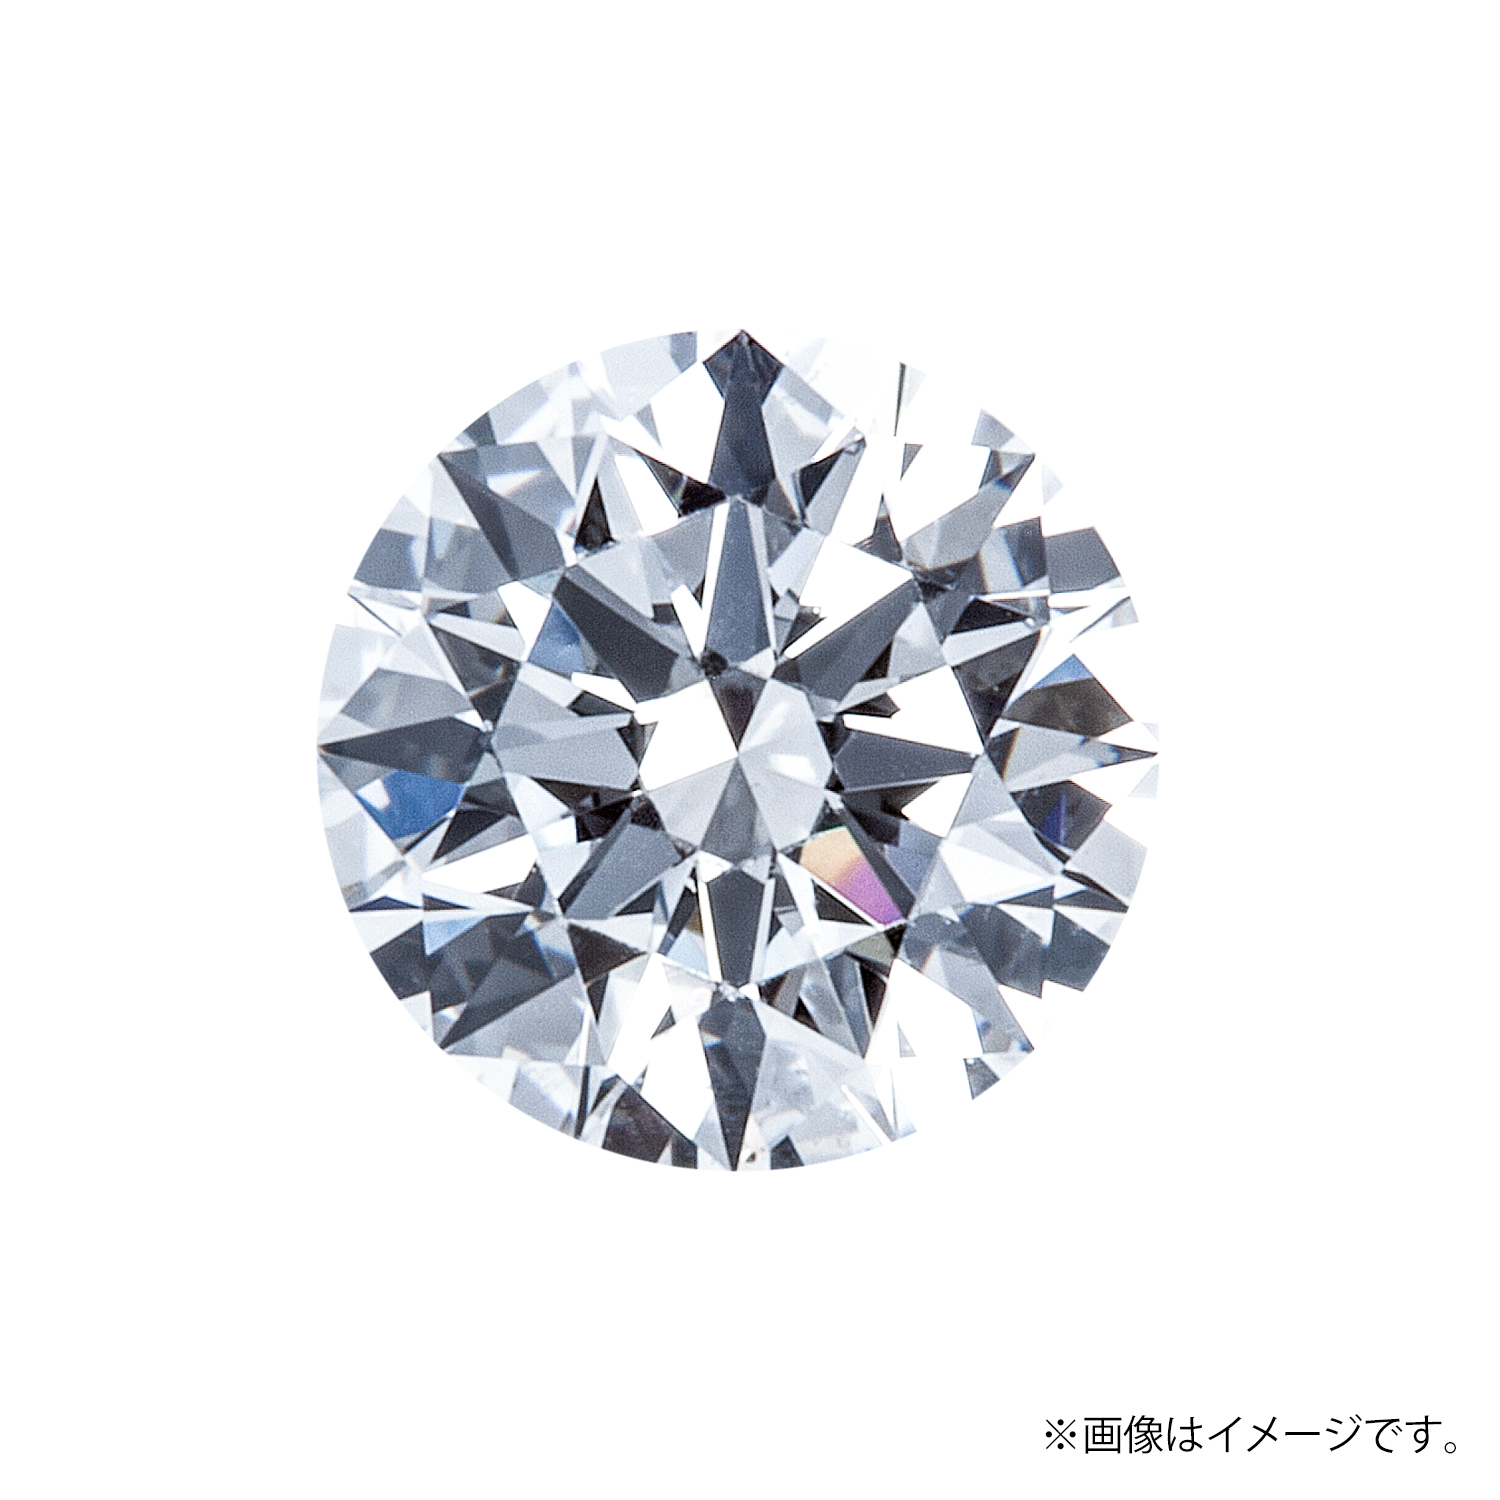 0.347ct Round ダイヤモンド / G / VVS2 / 3EX-H&C